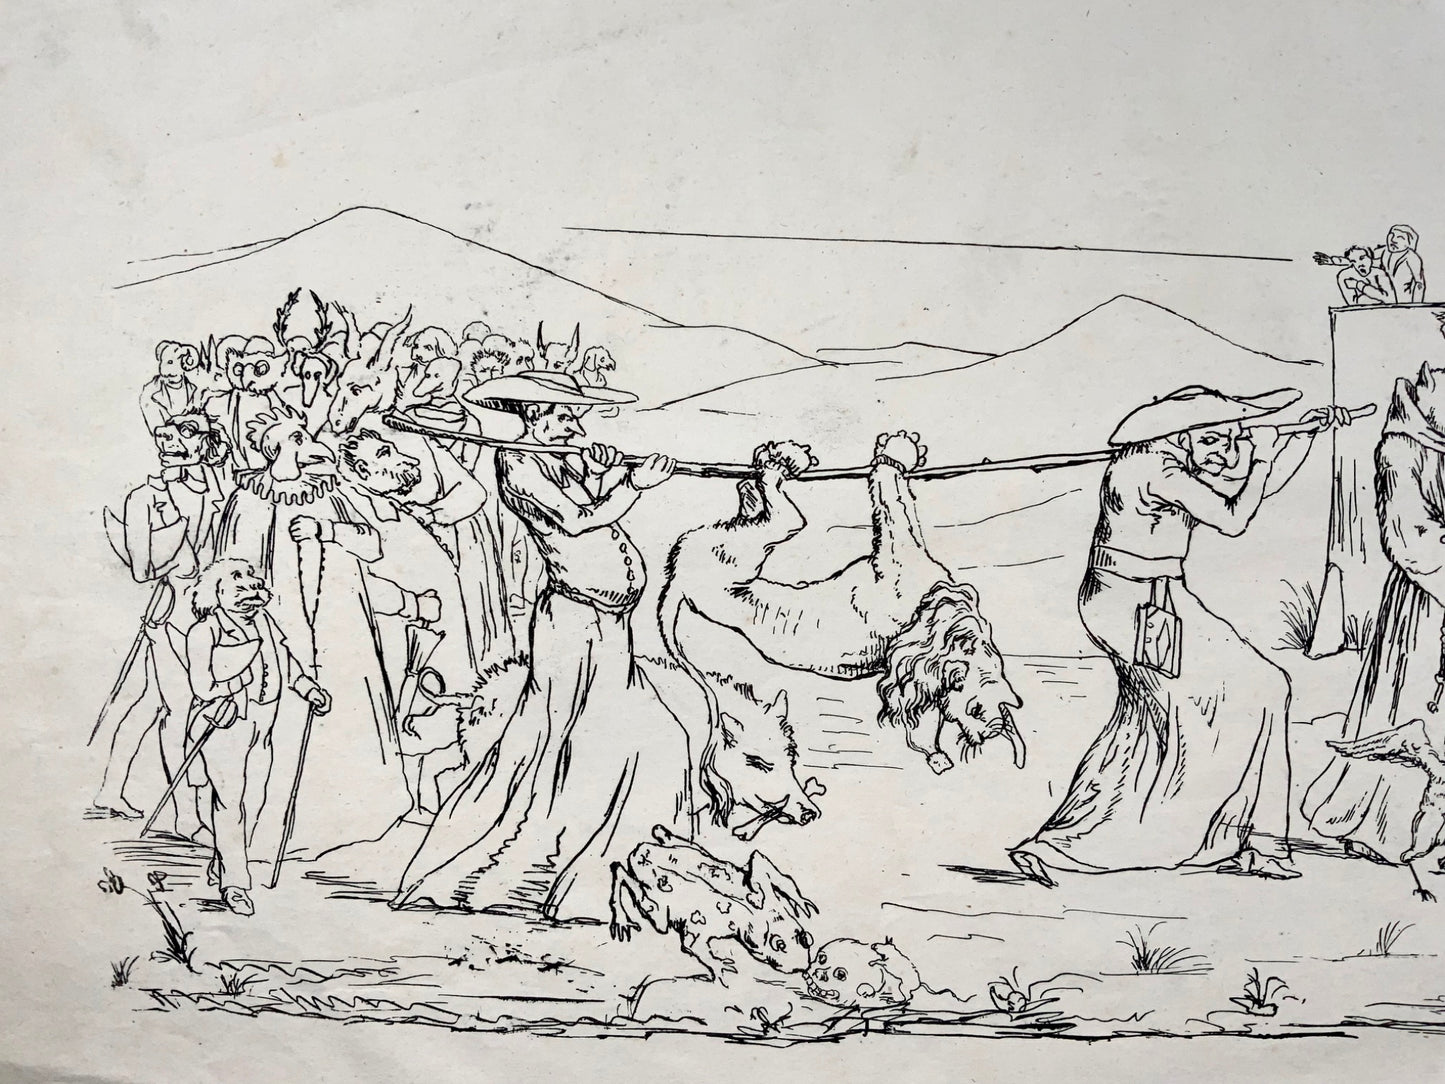 1845 Broadside satirique, funérailles / meurtre, Joseph Leu von Ebersol, Suisse